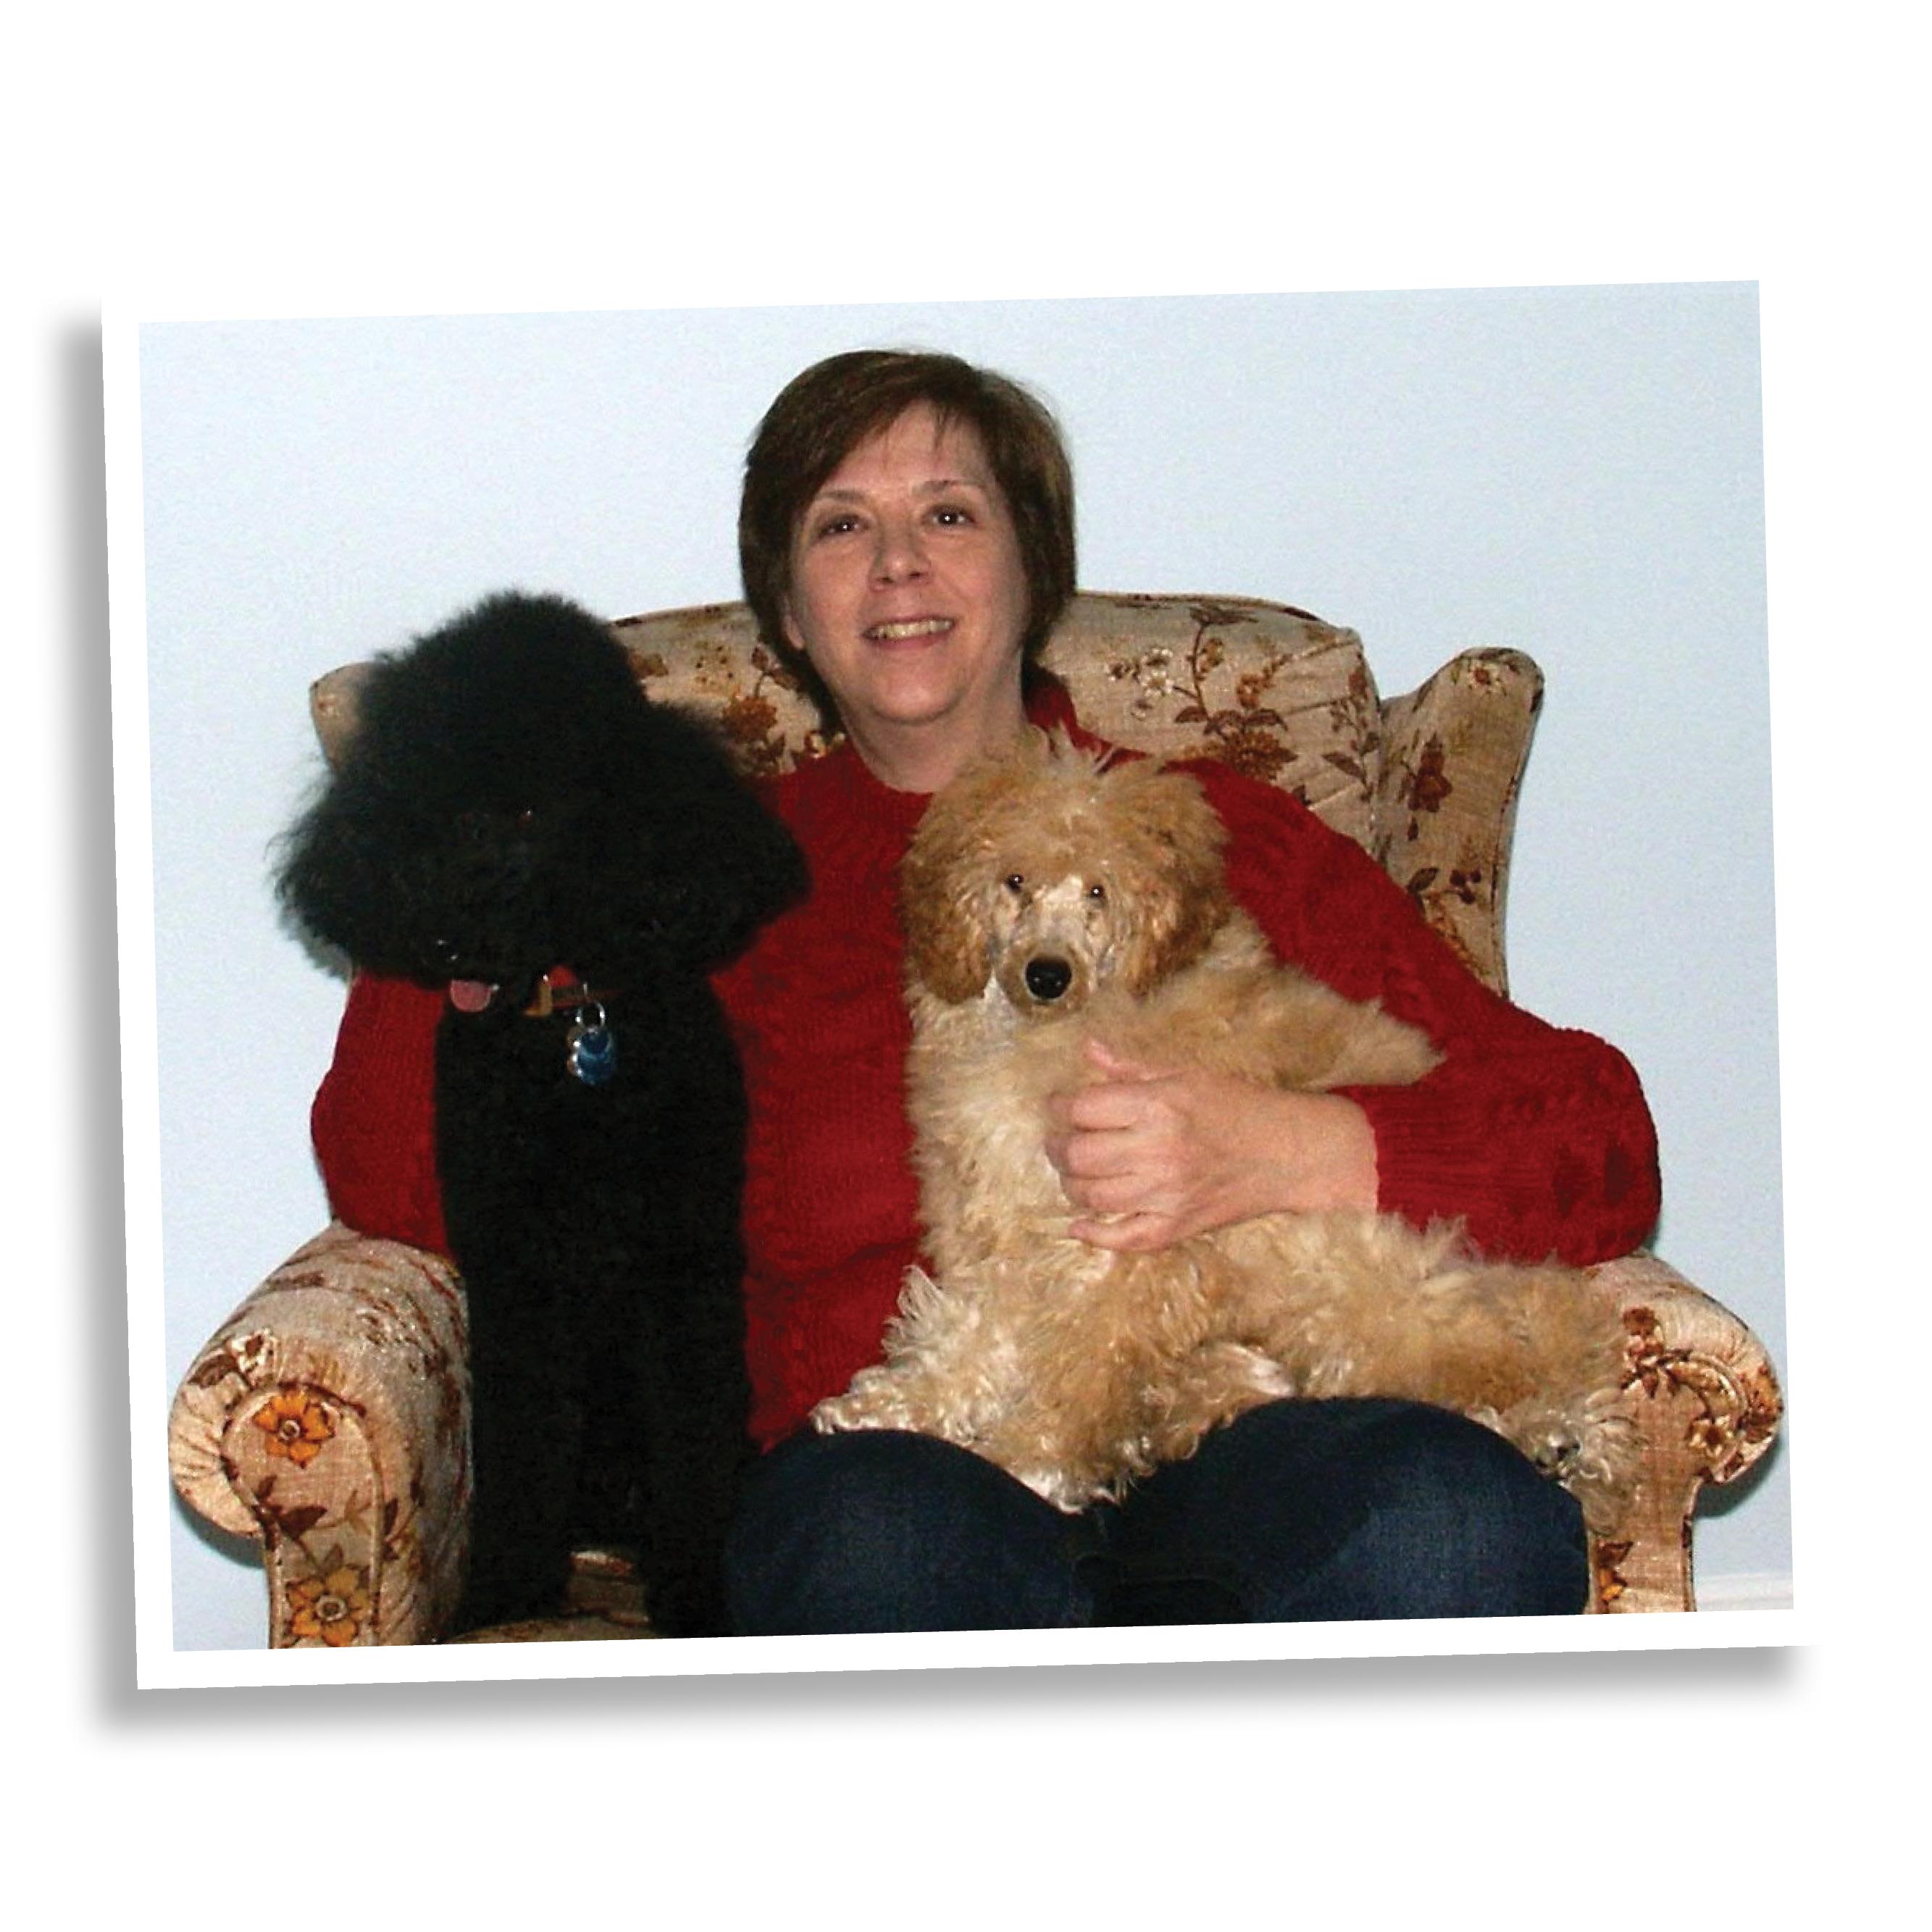 这张照片是莱斯利·芬宁格和她的狗. 